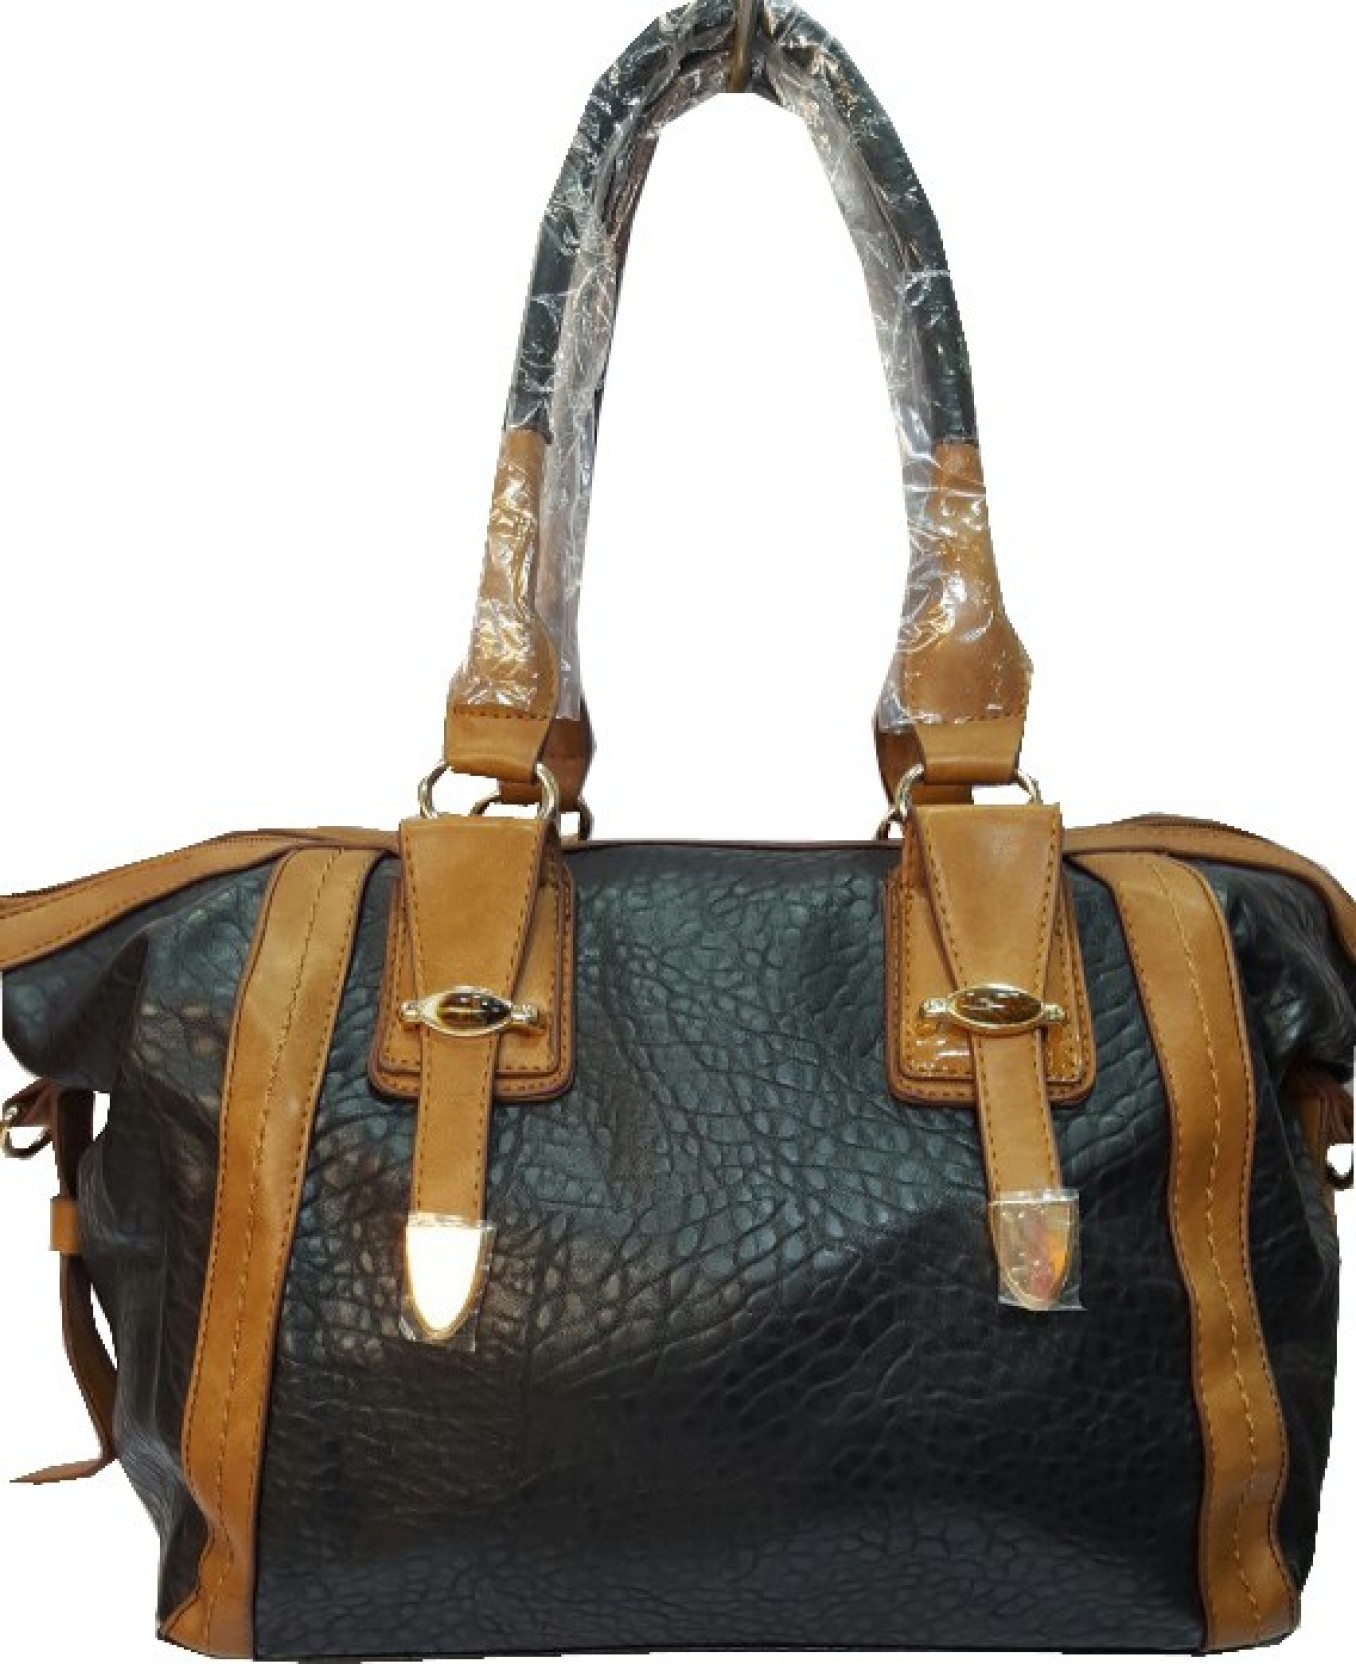 Handbags Online Shopping India Flipkart